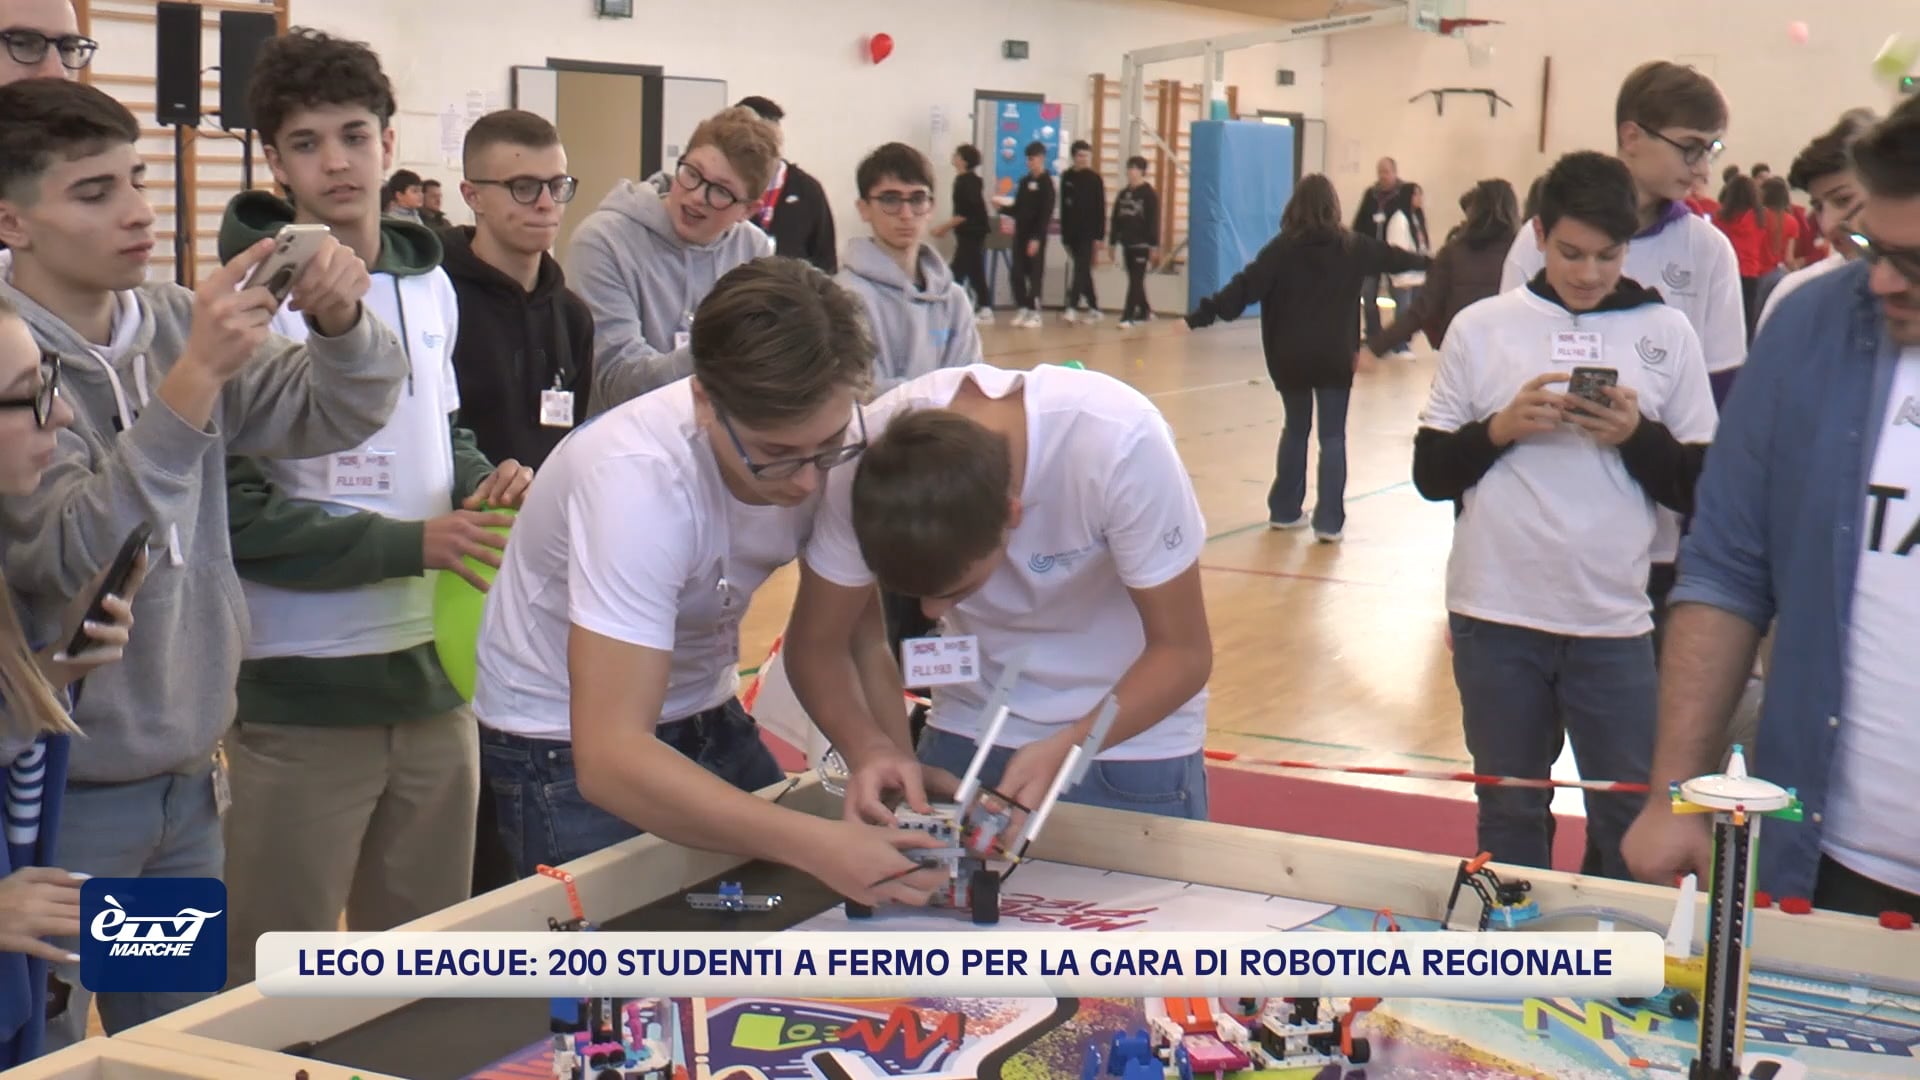 Lego League: 200 studenti a Fermo per la gara di robotica regionale - VIDEO